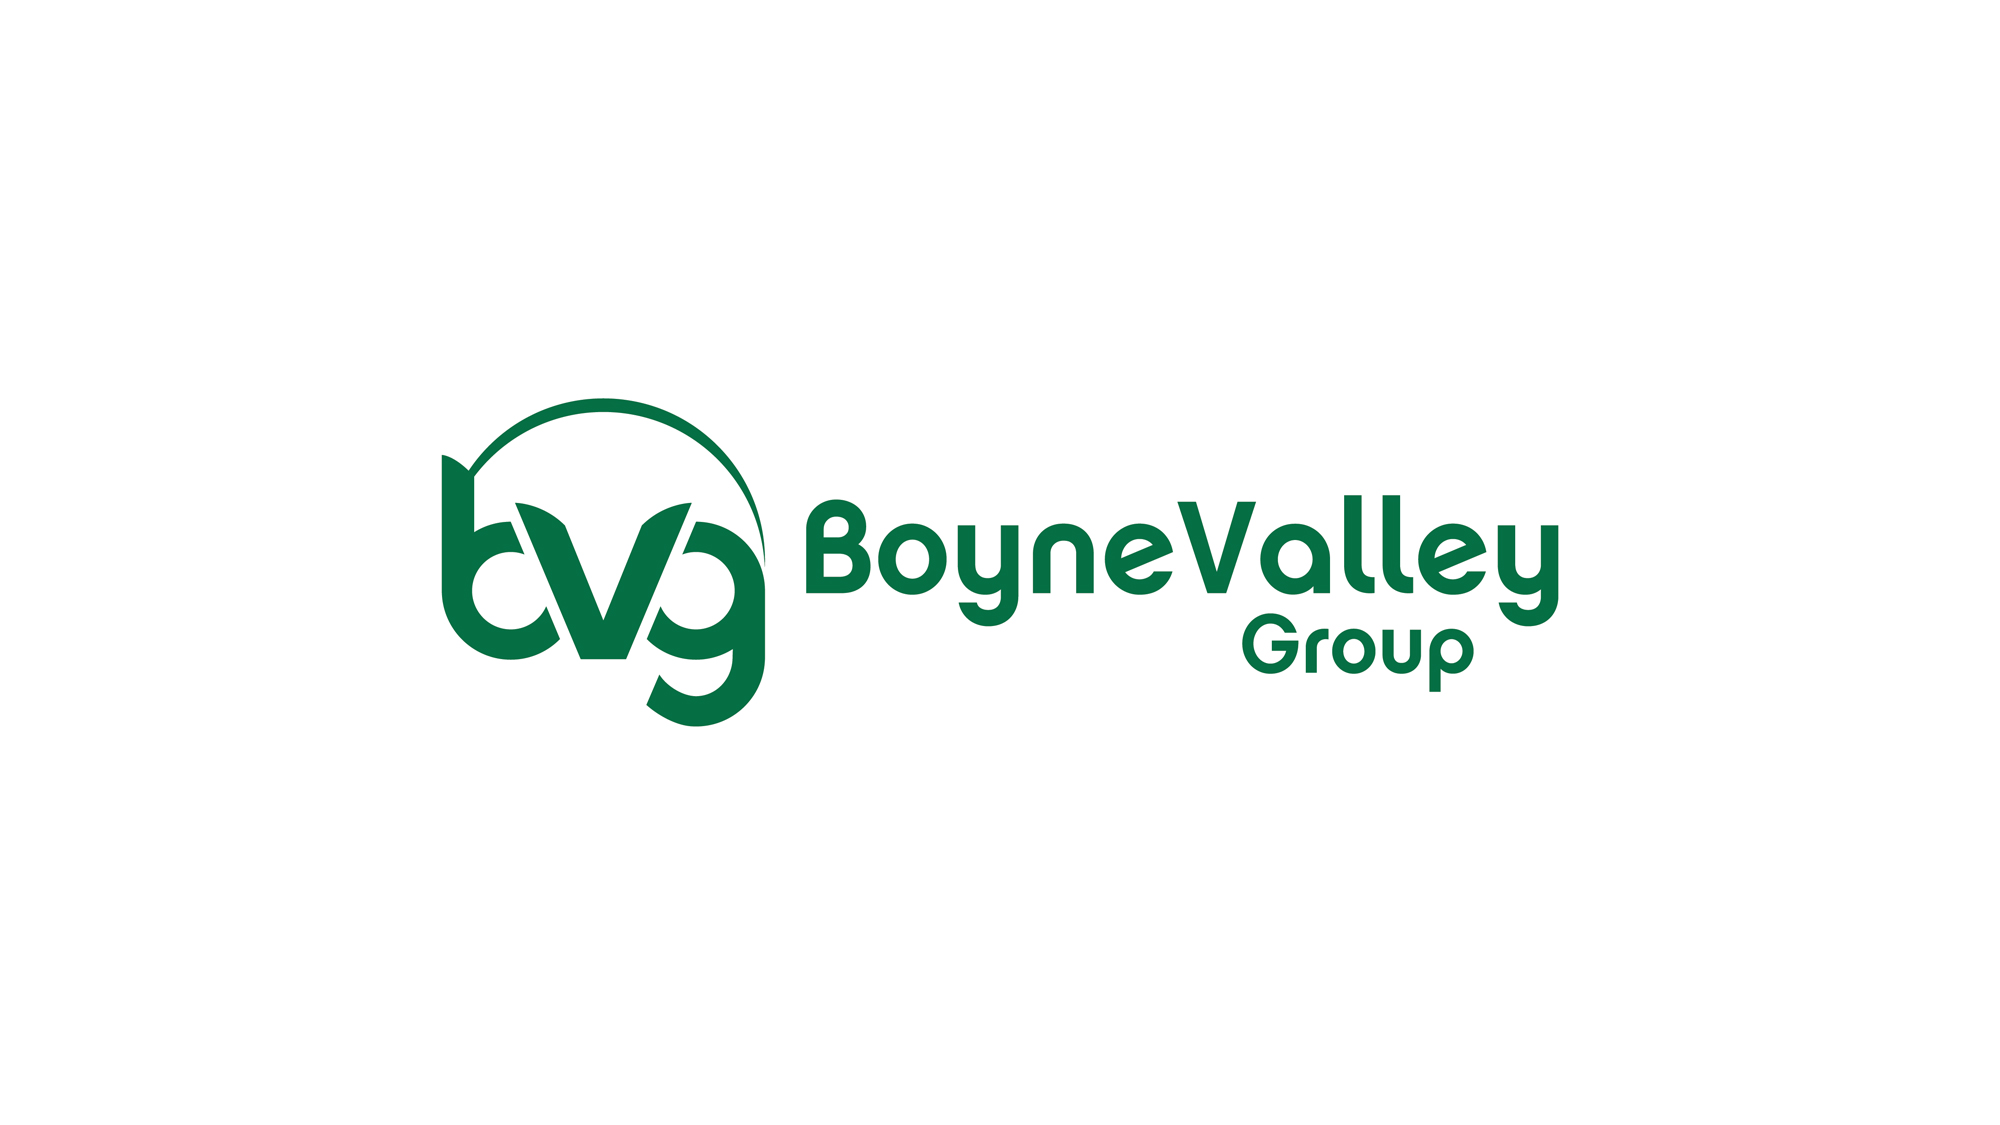 Boyne Valley Group